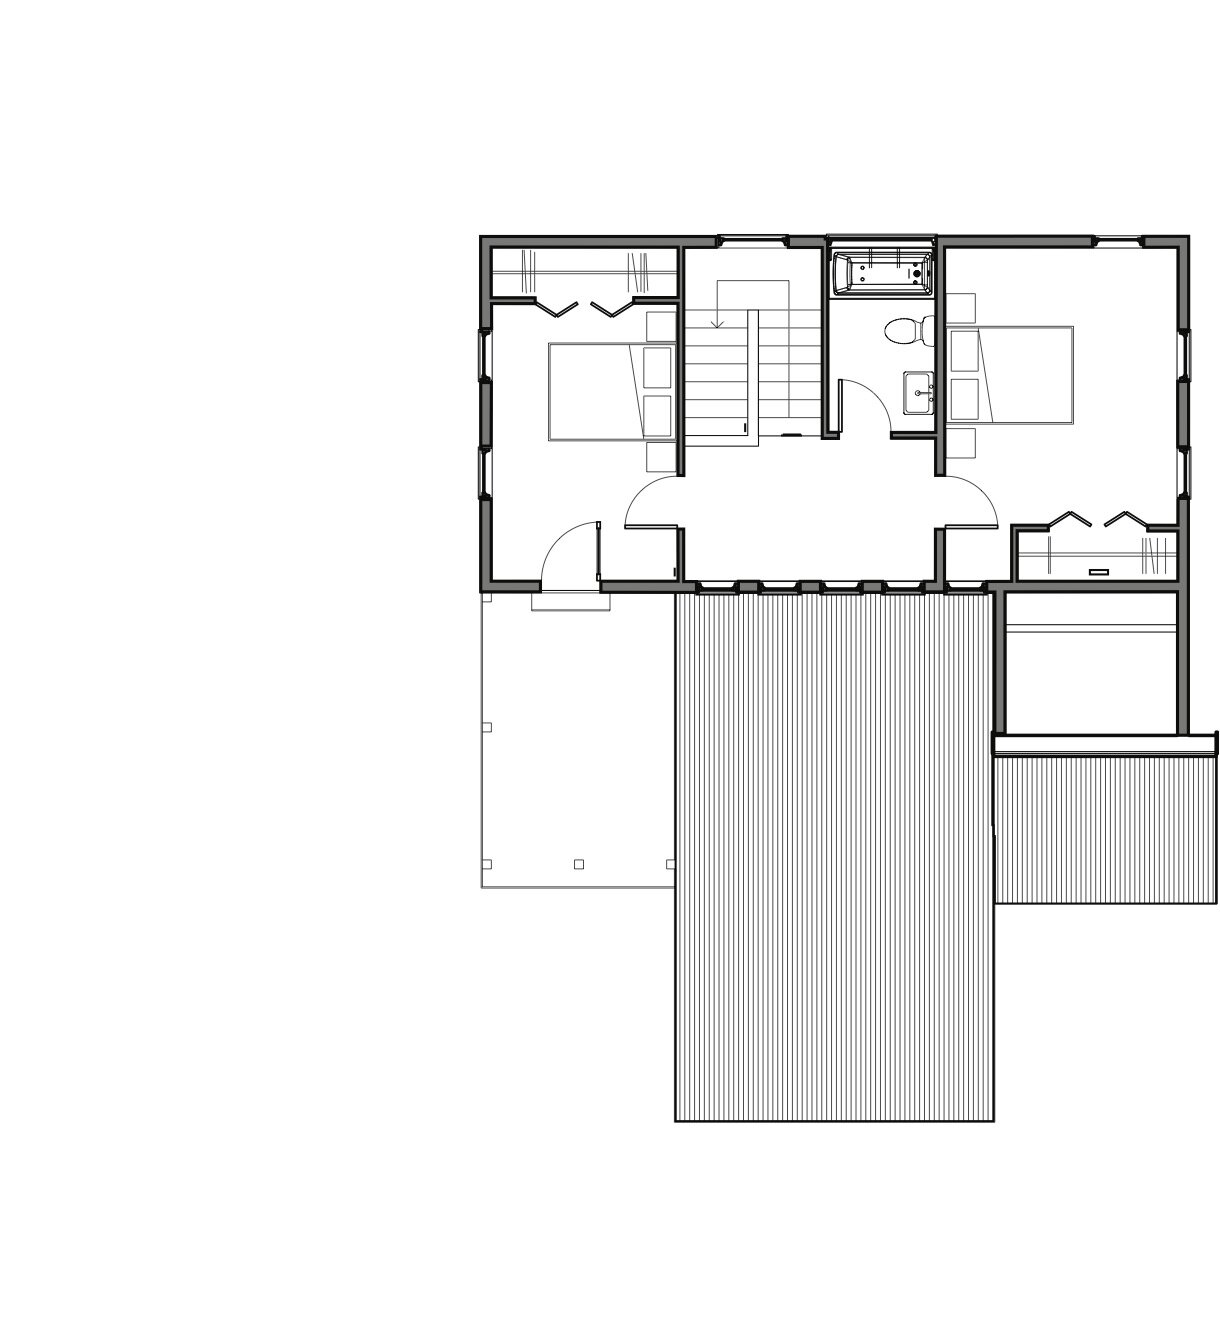 Bluebird - Sheet - A2-1 - FLOOR PLANS-Floor Plan - LEVEL 2.jpg